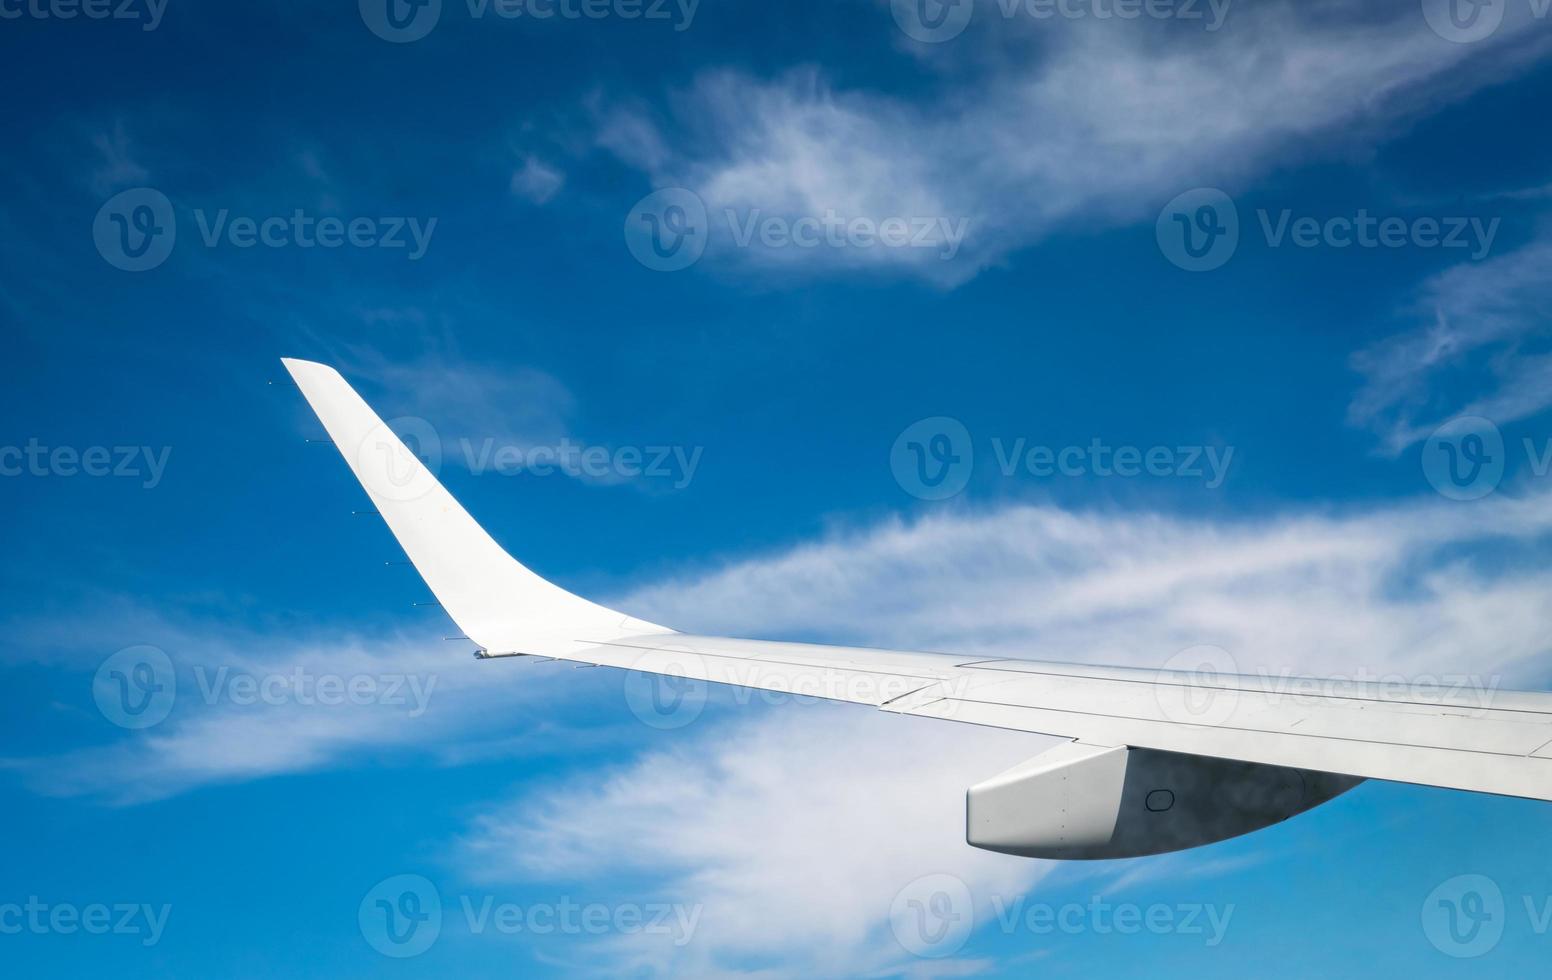 aile d'avion au-dessus des nuages blancs. avion volant sur le ciel bleu. vue panoramique depuis la fenêtre de l'avion. vol d'une compagnie aérienne commerciale. aile d'avion au-dessus des nuages. concept de mécanique de vol. vol international. photo